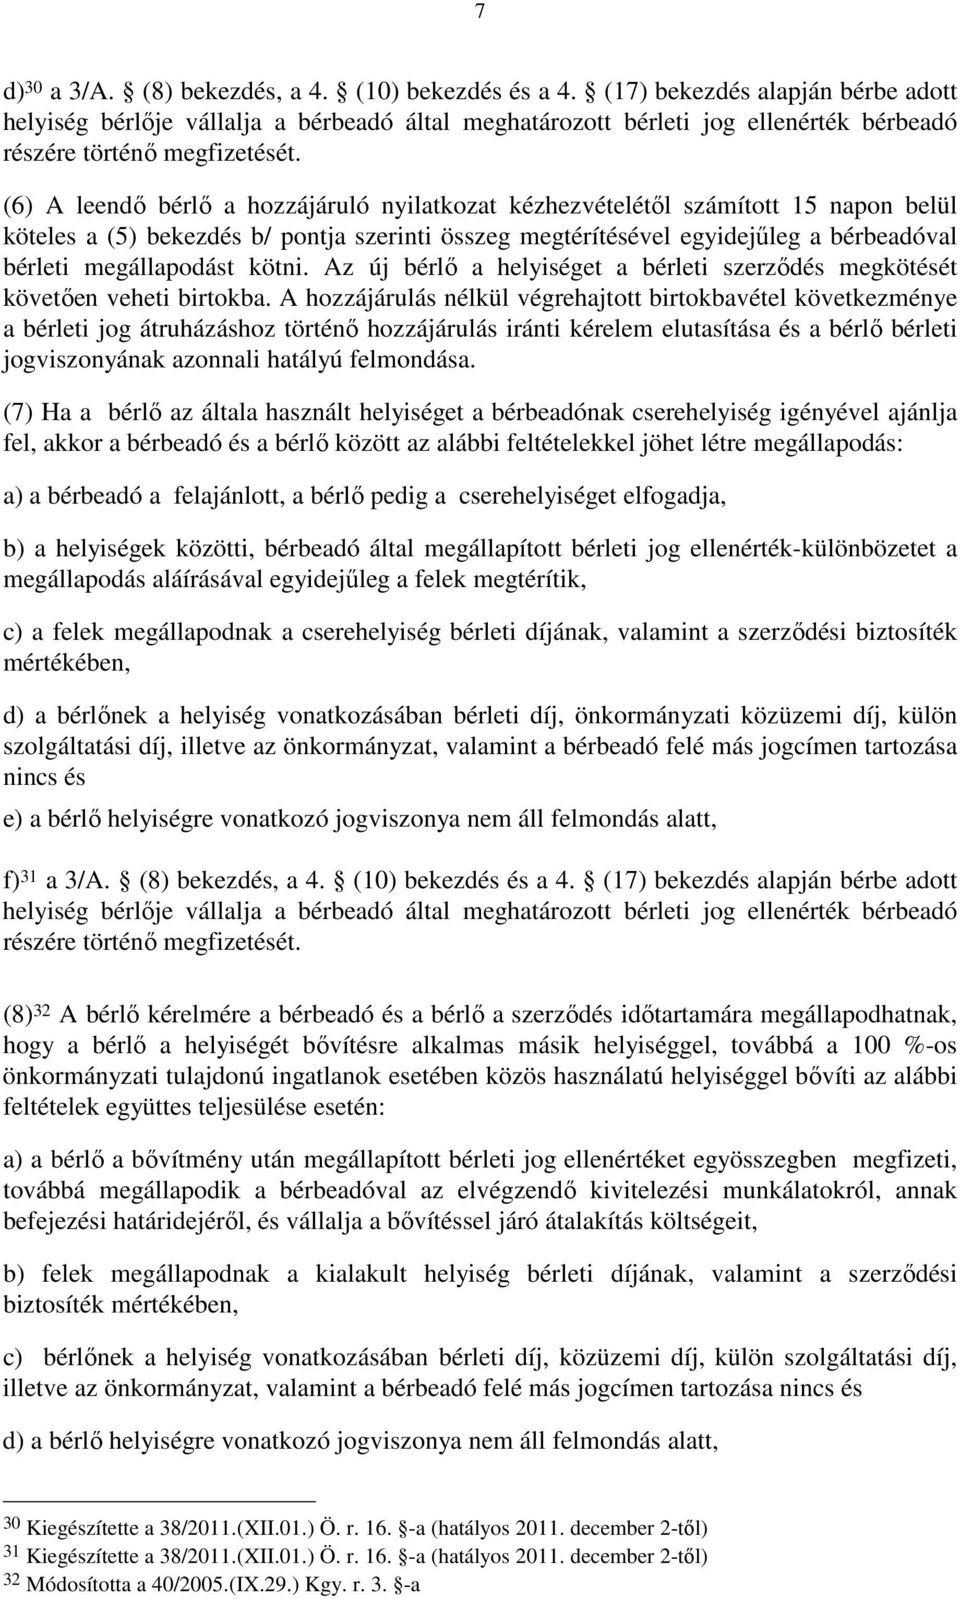 (6) A leendı bérlı a hozzájáruló nyilatkozat kézhezvételétıl számított 15 napon belül köteles a (5) bekezdés b/ pontja szerinti összeg megtérítésével egyidejőleg a bérbeadóval bérleti megállapodást